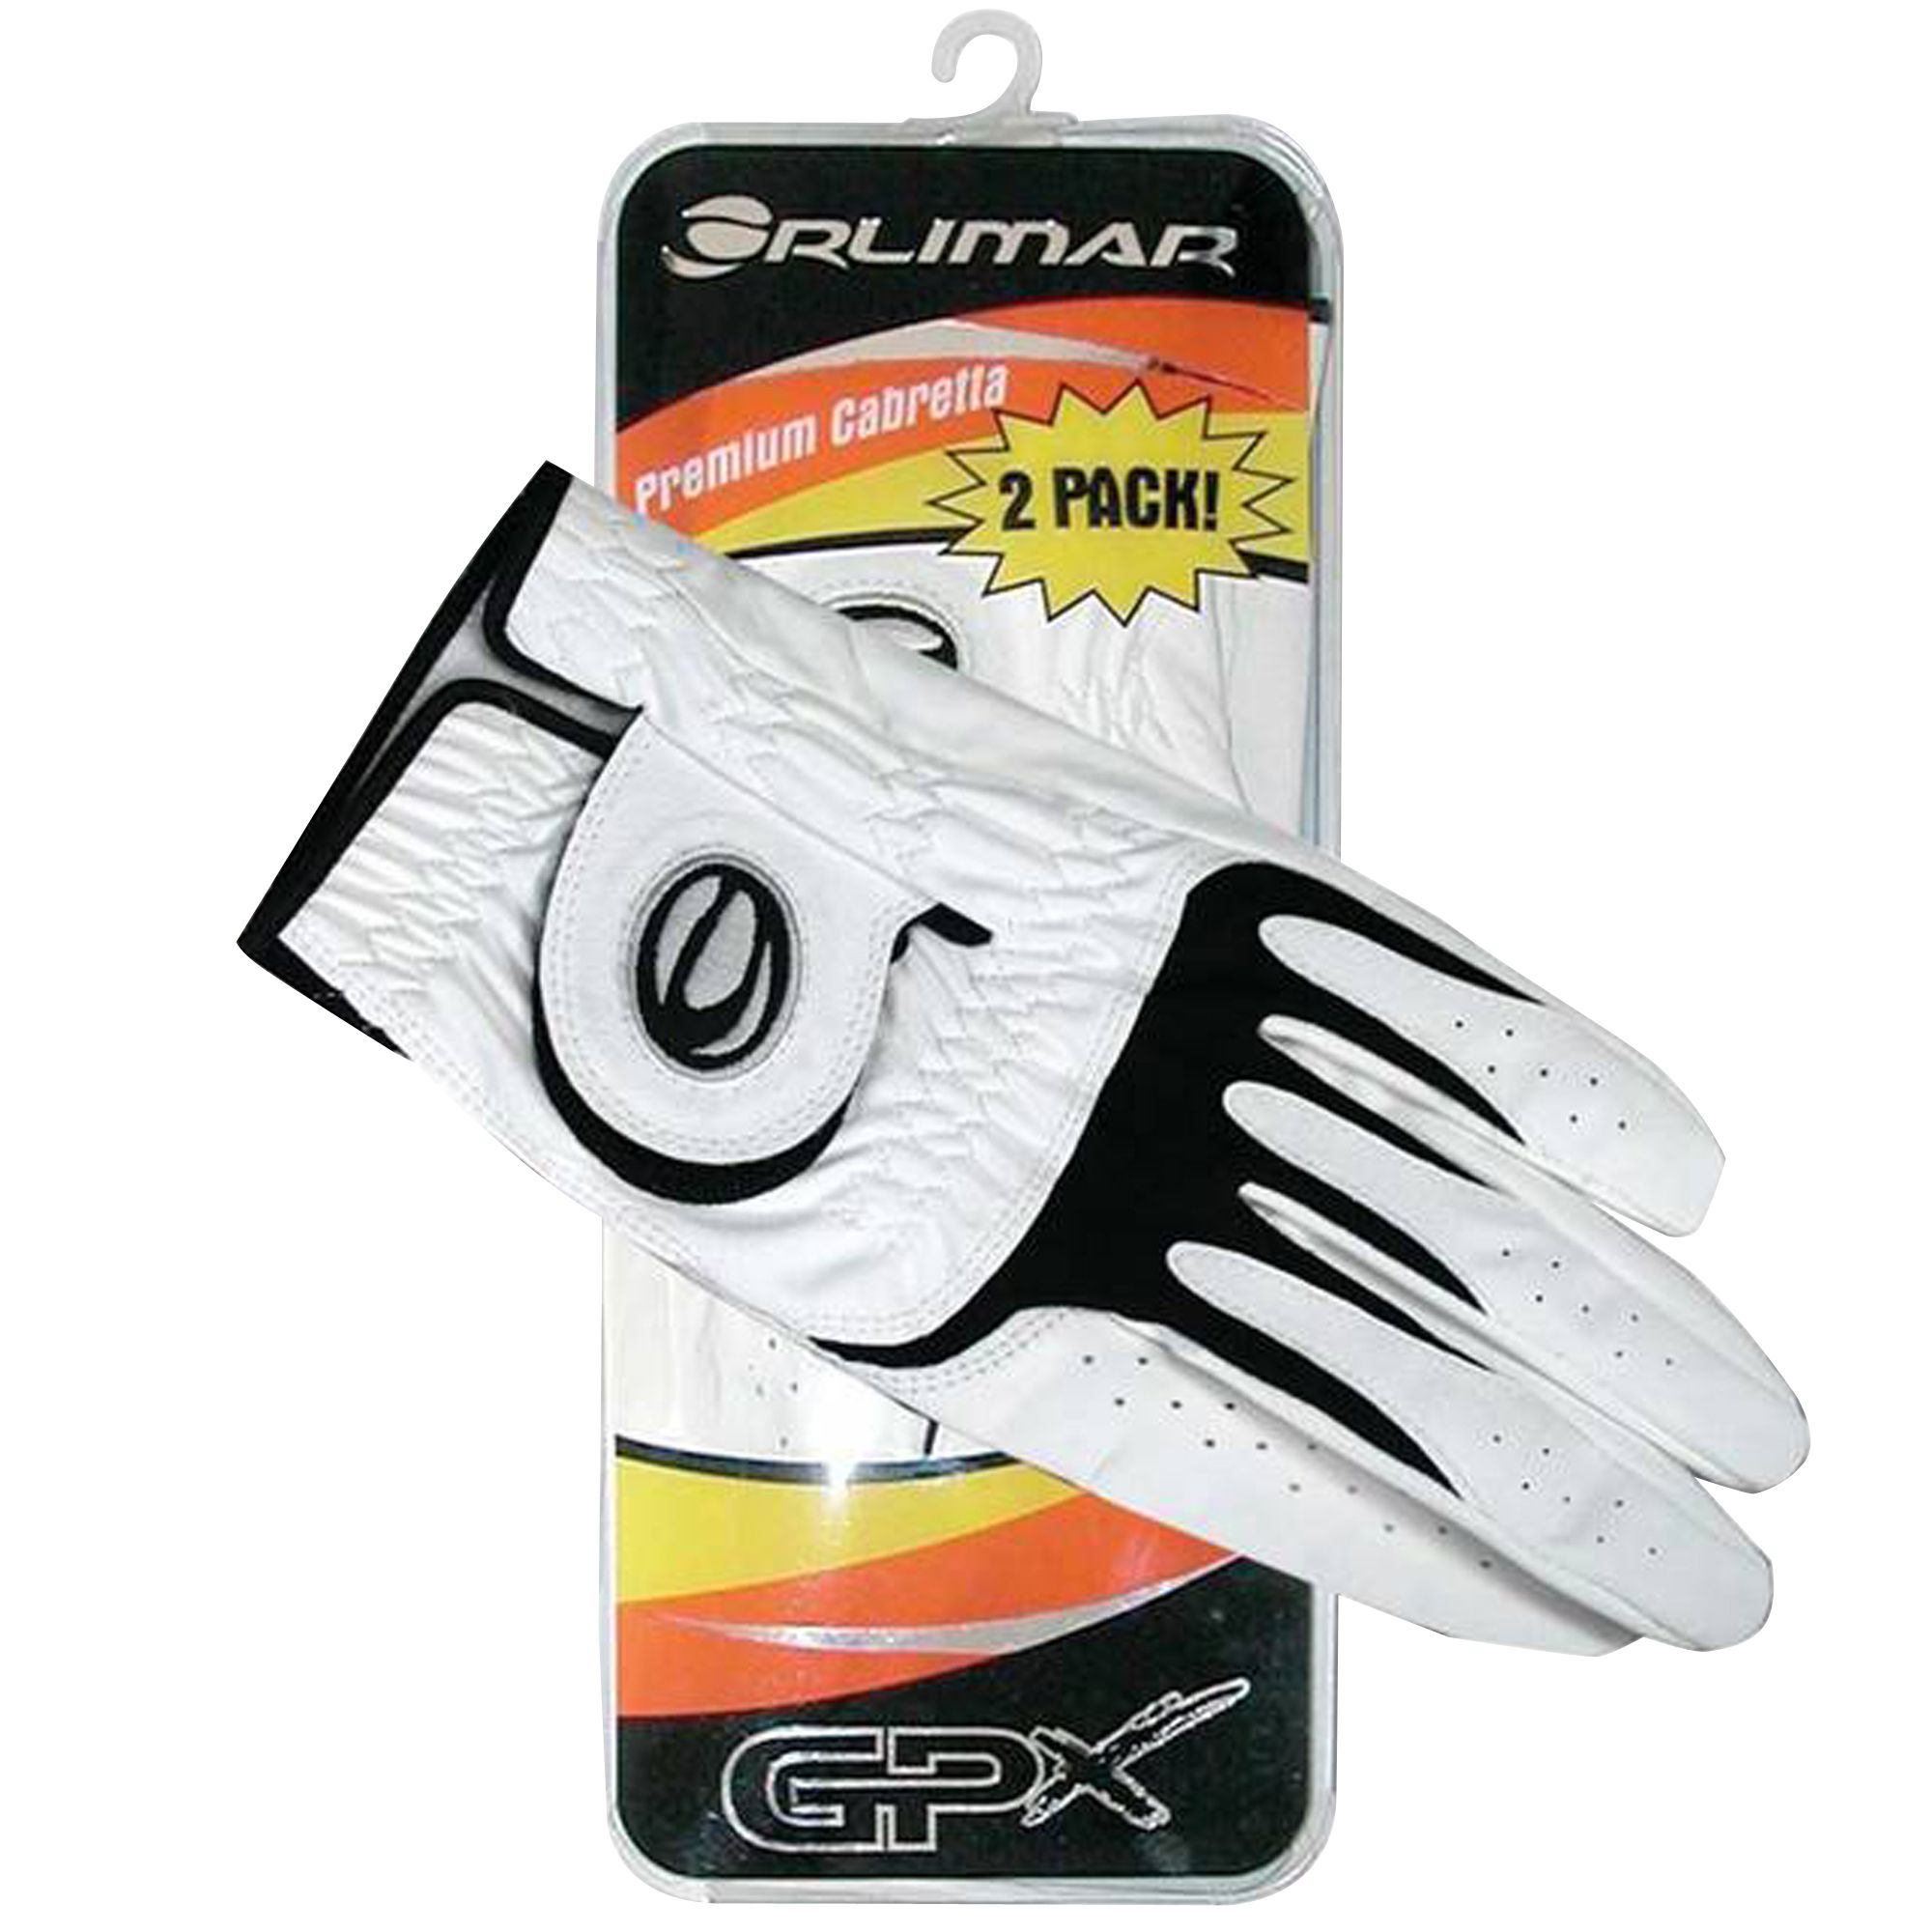 Orlimar GPX Cabretta Glove X-Large 2-pack